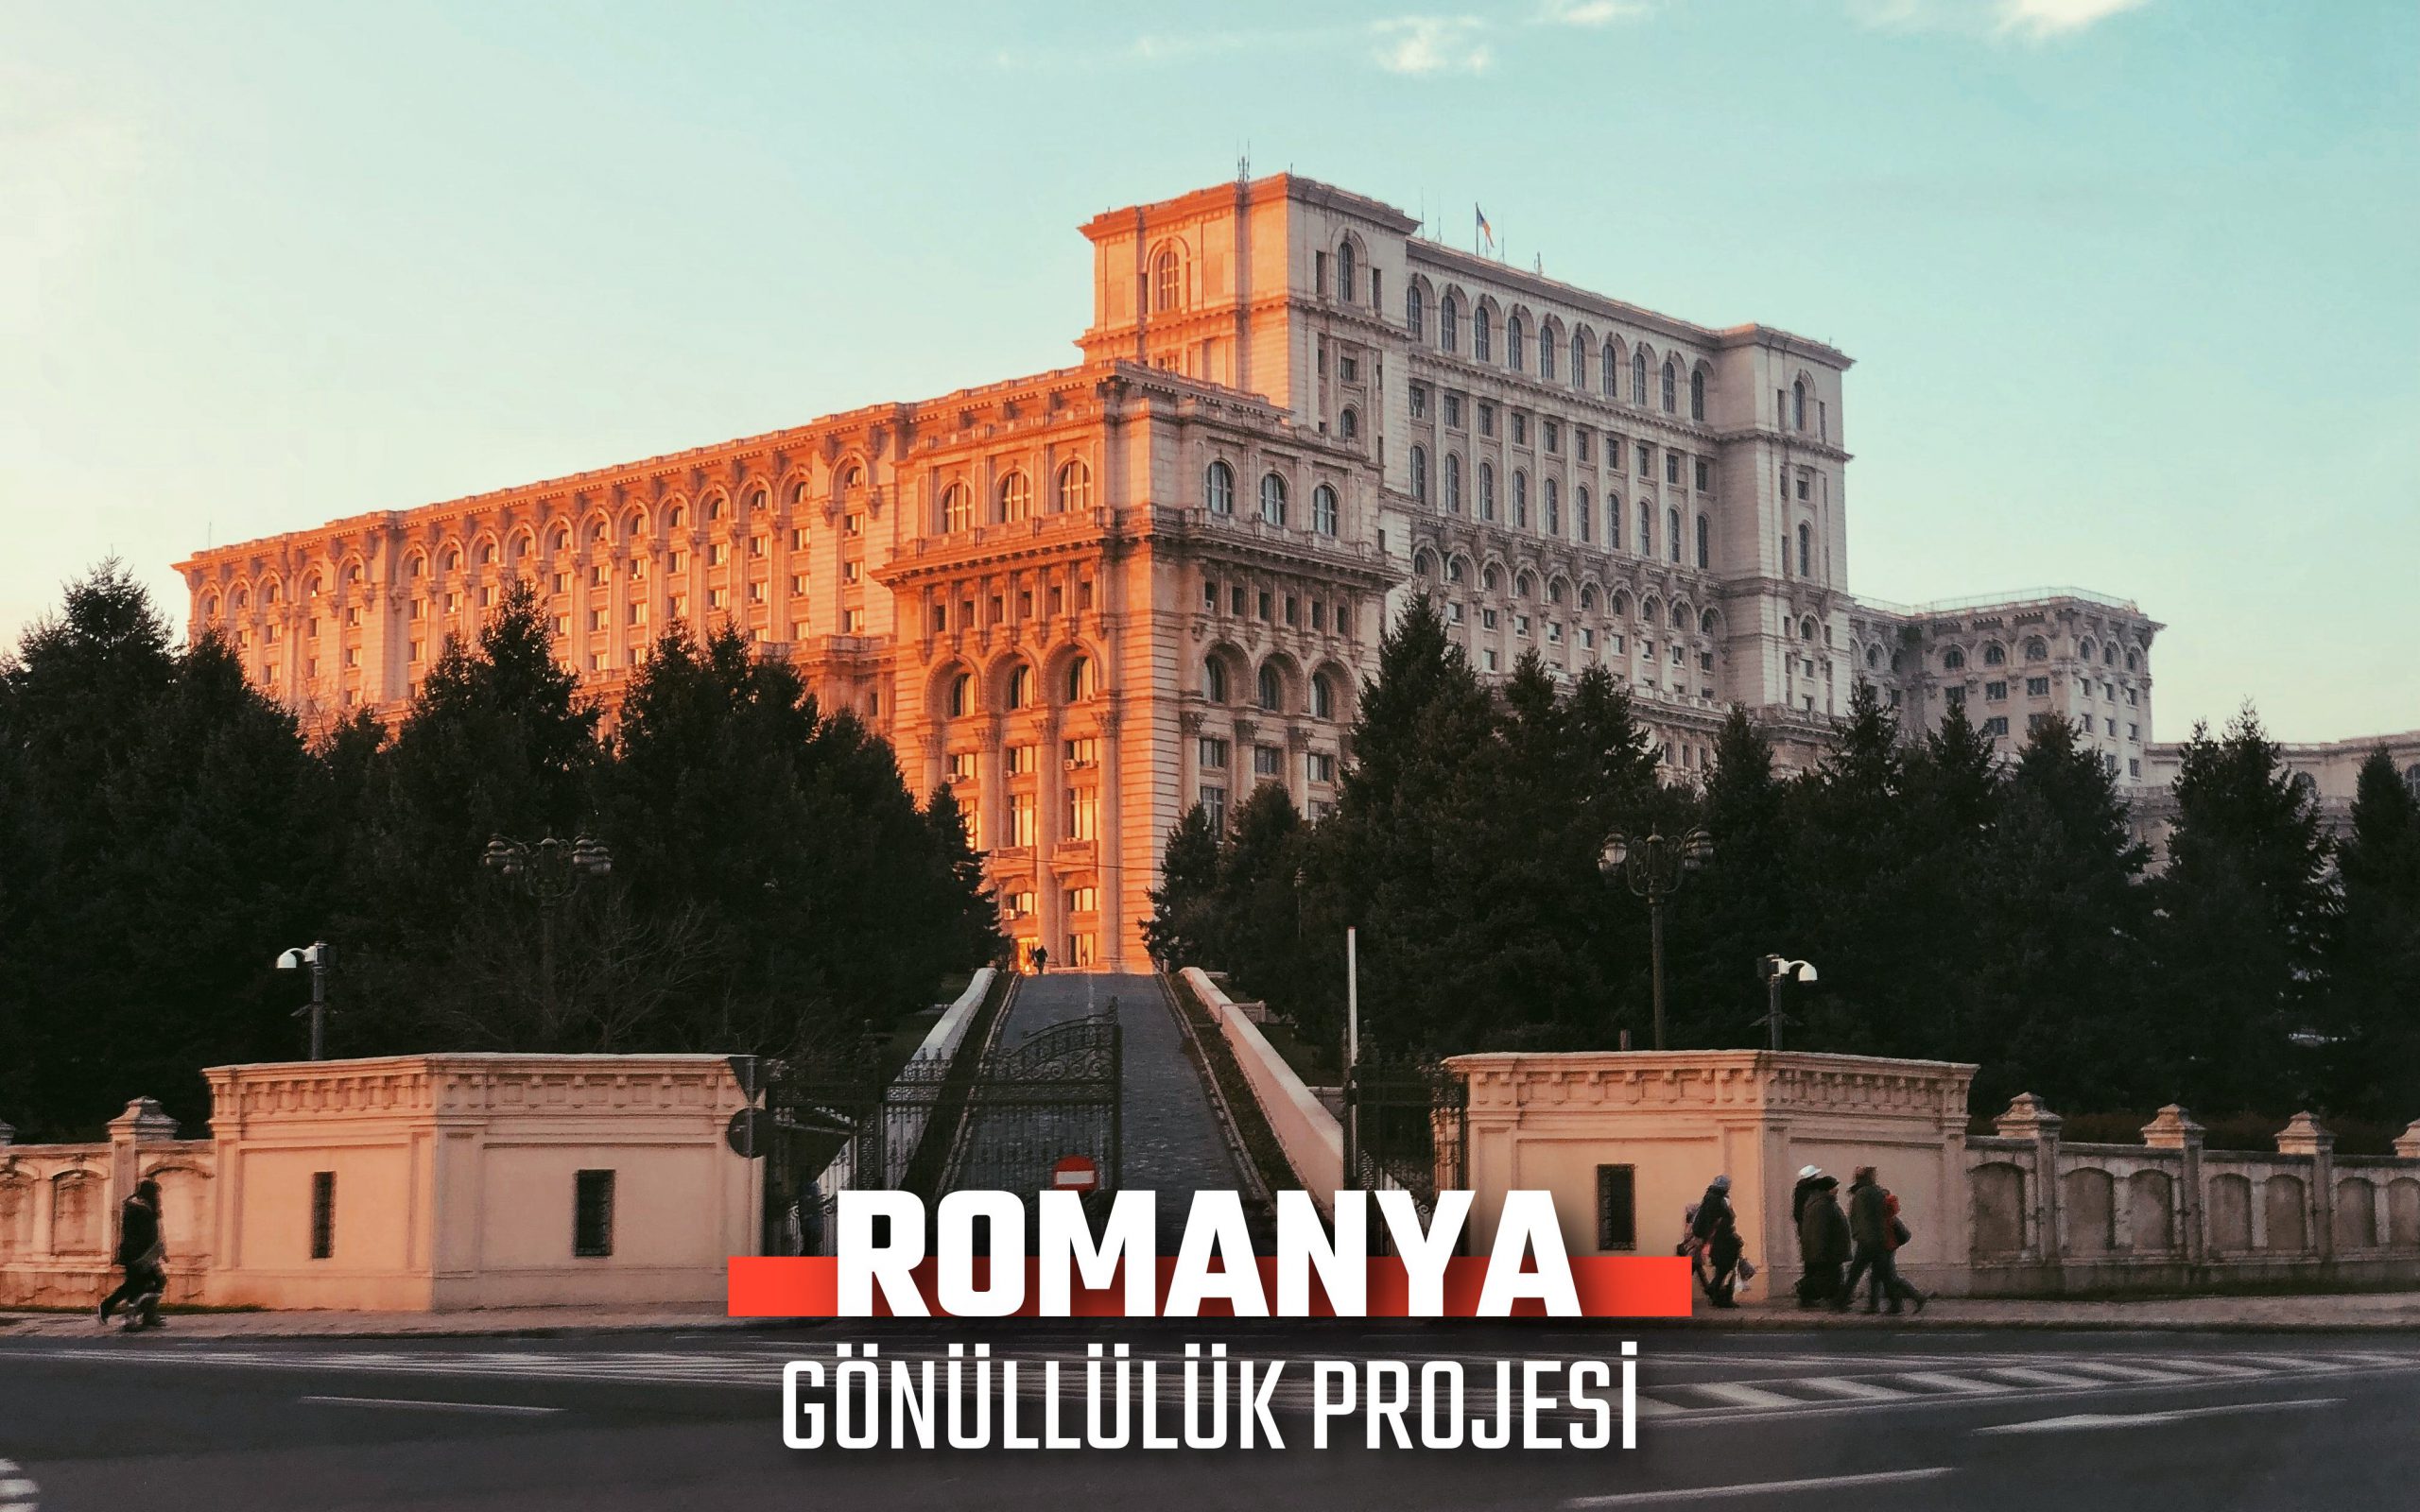 ROMANYA AVRUPA DAYANIŞMA PROGRAMI GÖNÜLLÜLÜK PROJESİ